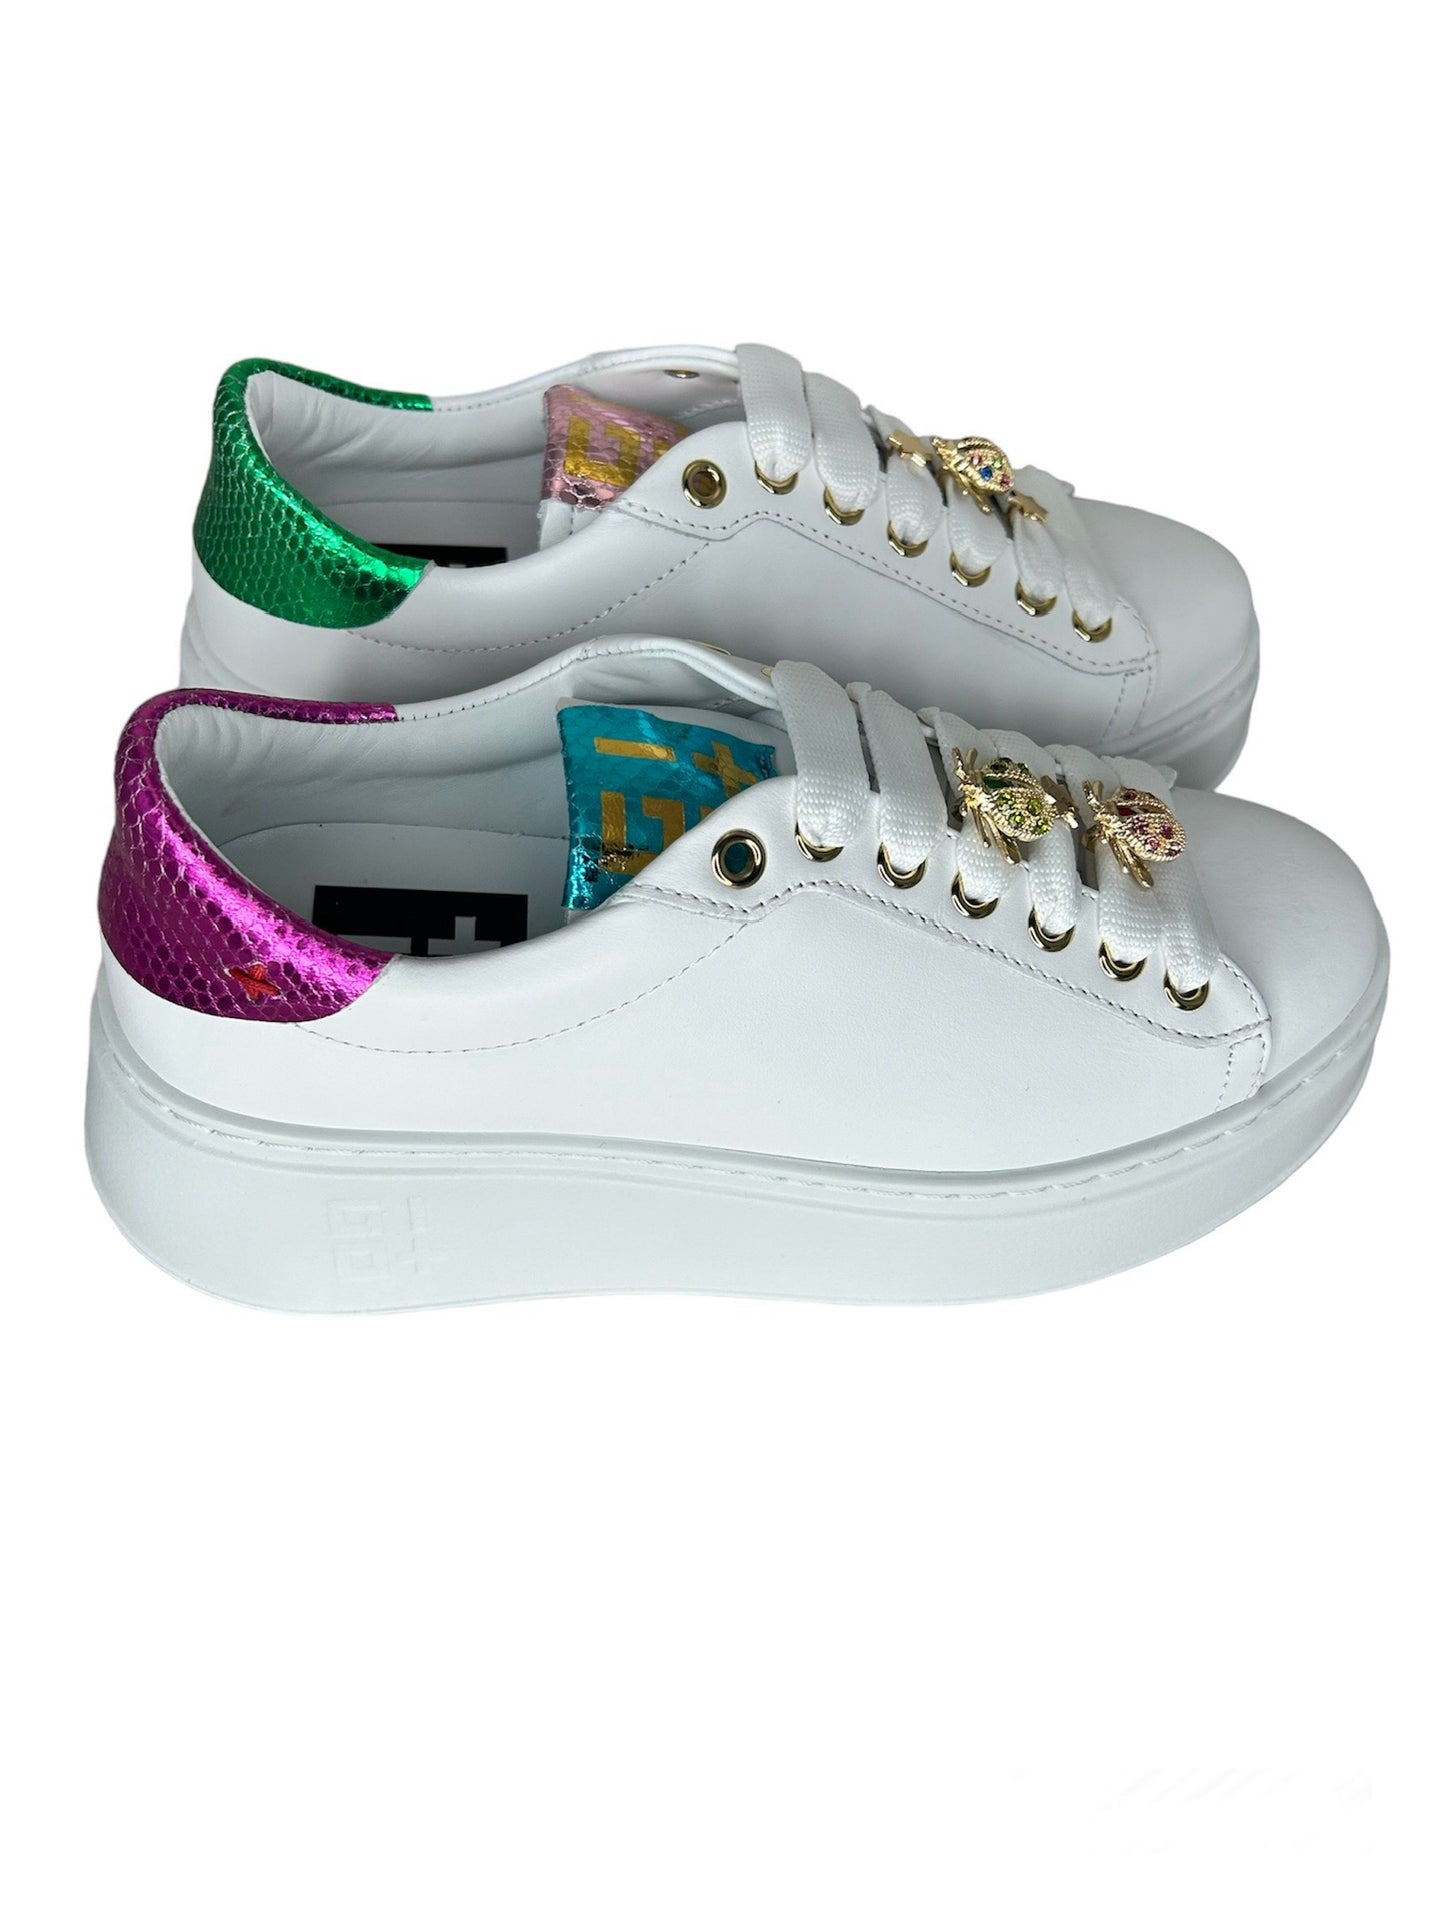 Gio+ Sneakers white viperina coccinelle